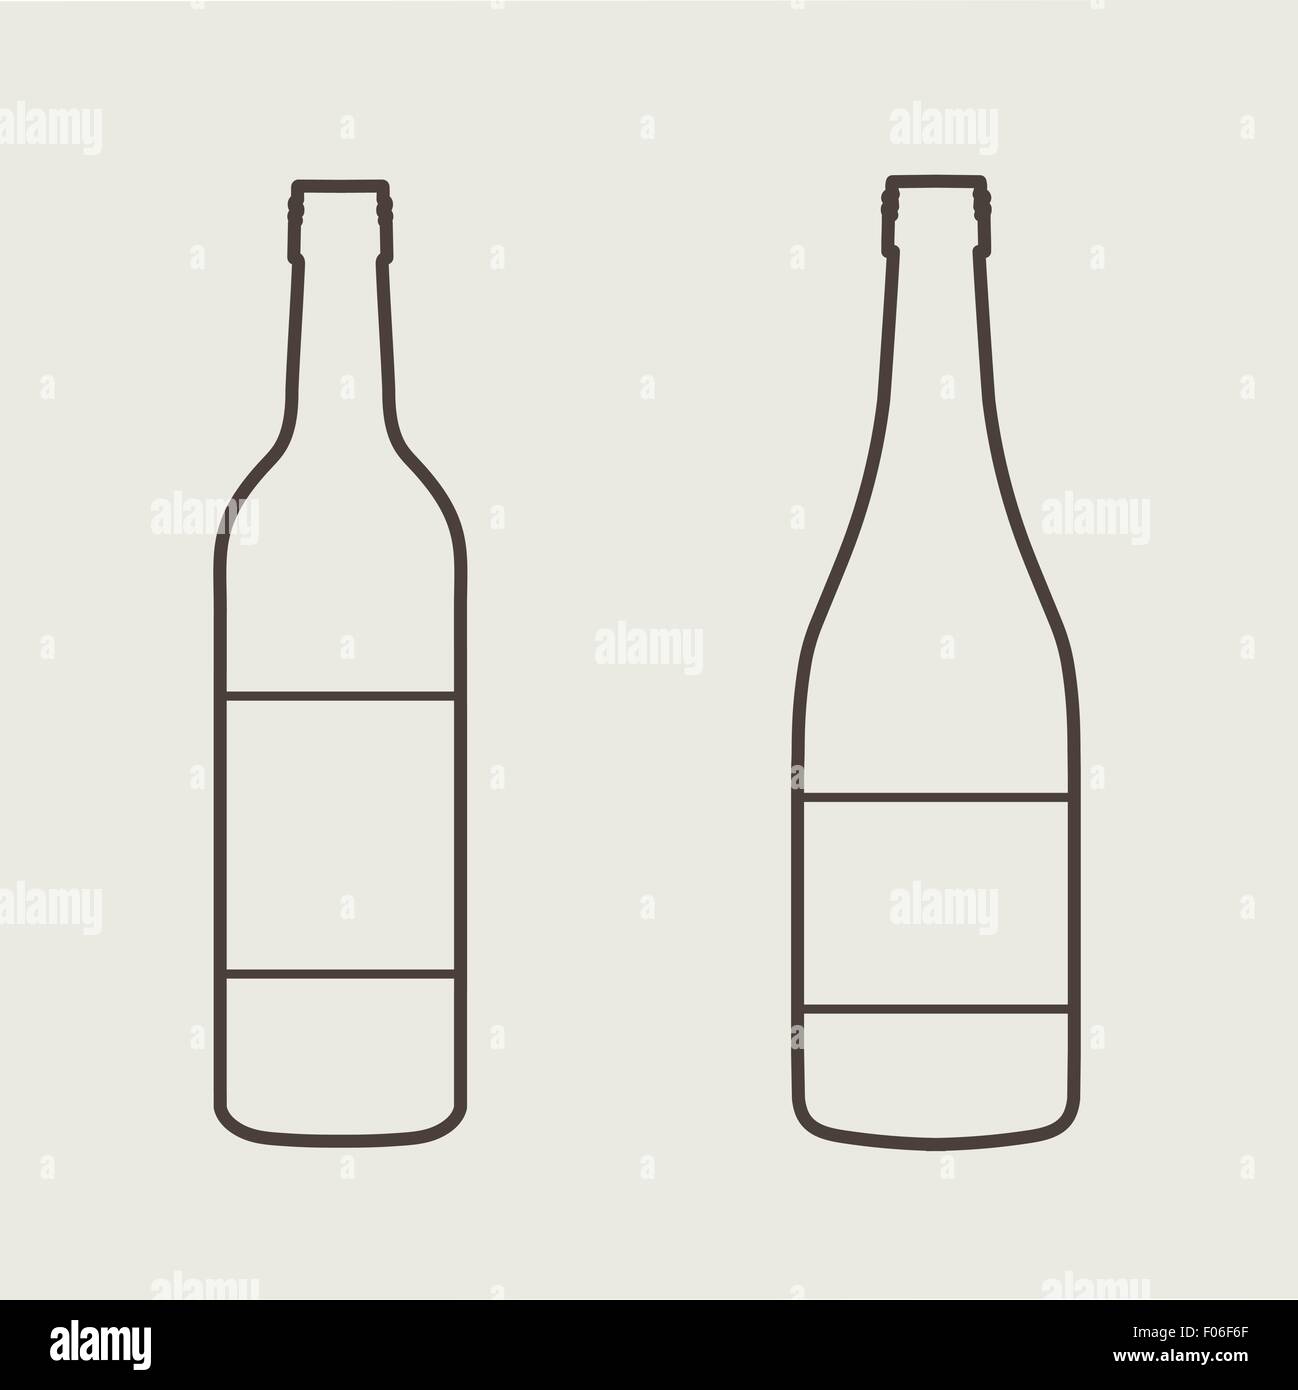 Weinflasche Zeichen gesetzt. Flasche-Symbol Stock-Vektorgrafik - Alamy